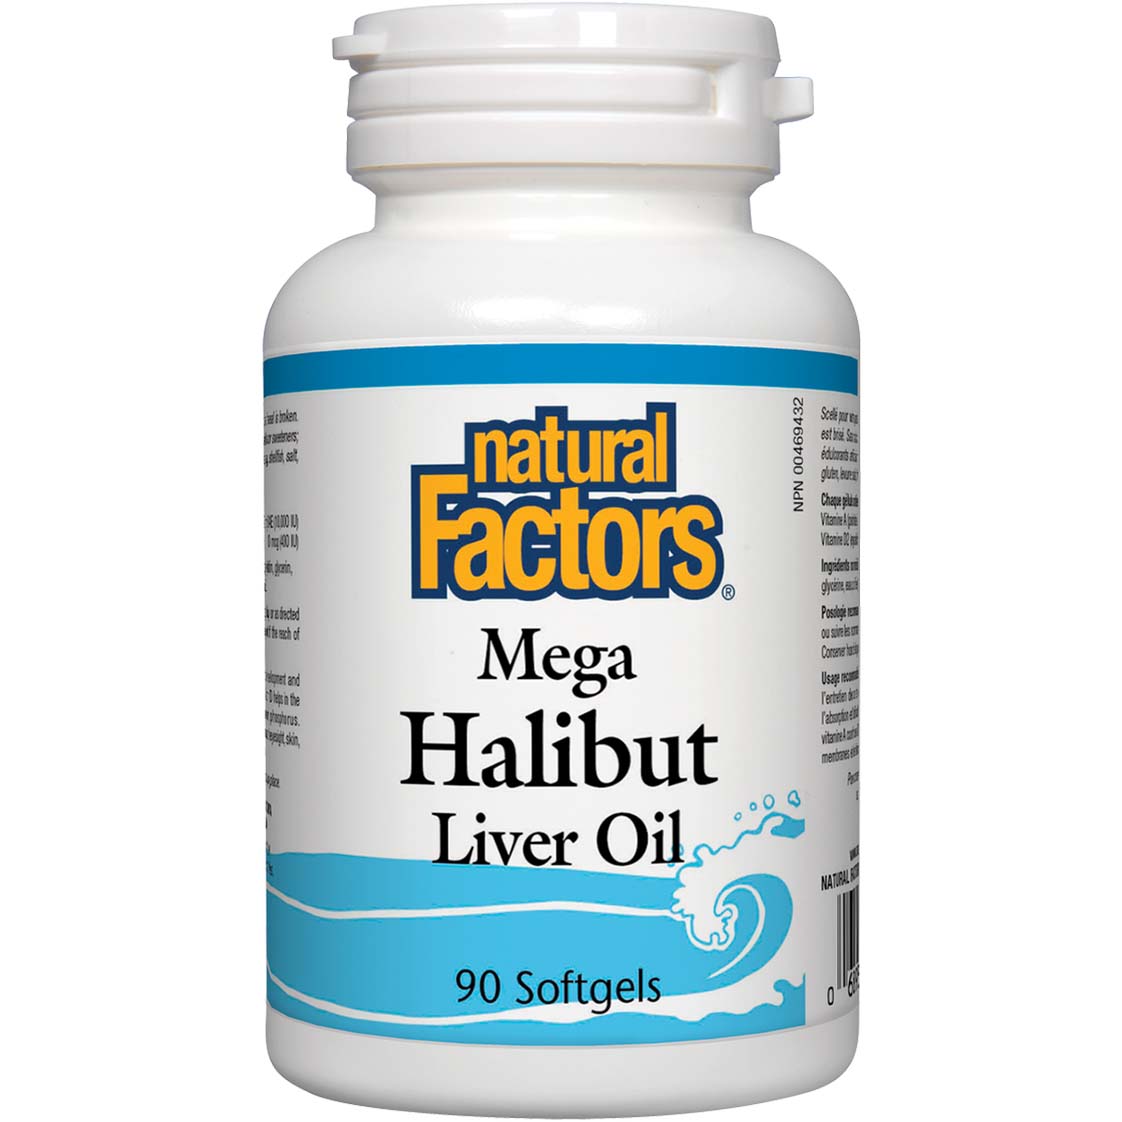 Natural Factors Mega Halibut Liver Oil, 90 Softgels